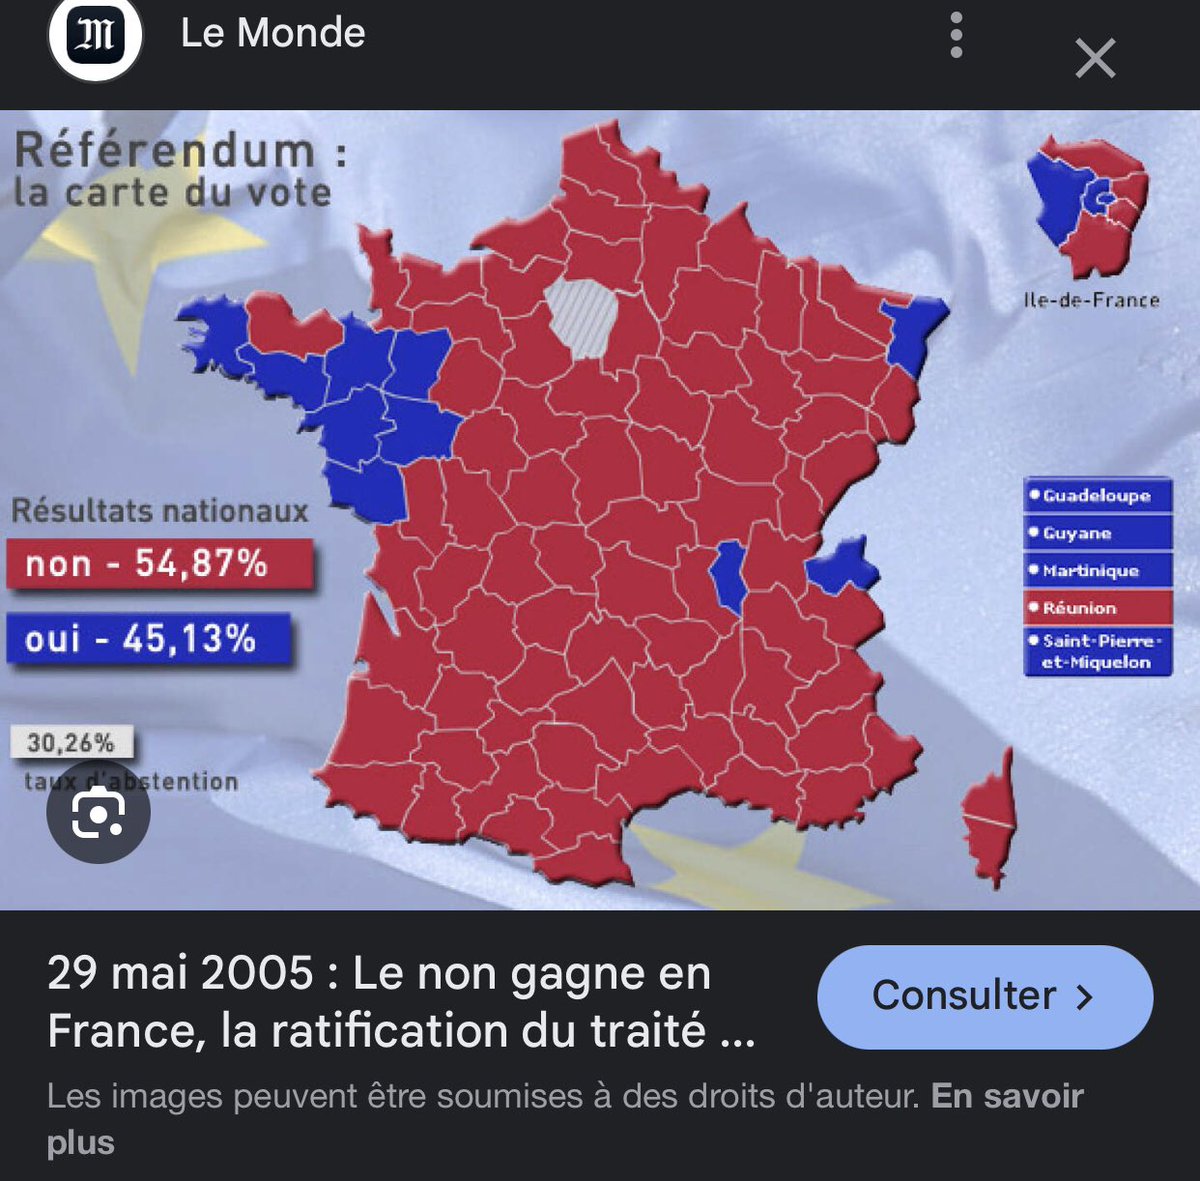 Le 29 Mai 2005, les Français votaient non au référendum pour donner plus de pouvoir à l’UE. Le Congres renversait ce vote 3 ans plus tard. ✅Les Français subissent depuis les conséquences d’une UE destructrice à cause de la trahison de leurs représentants @NicolasSarkozy